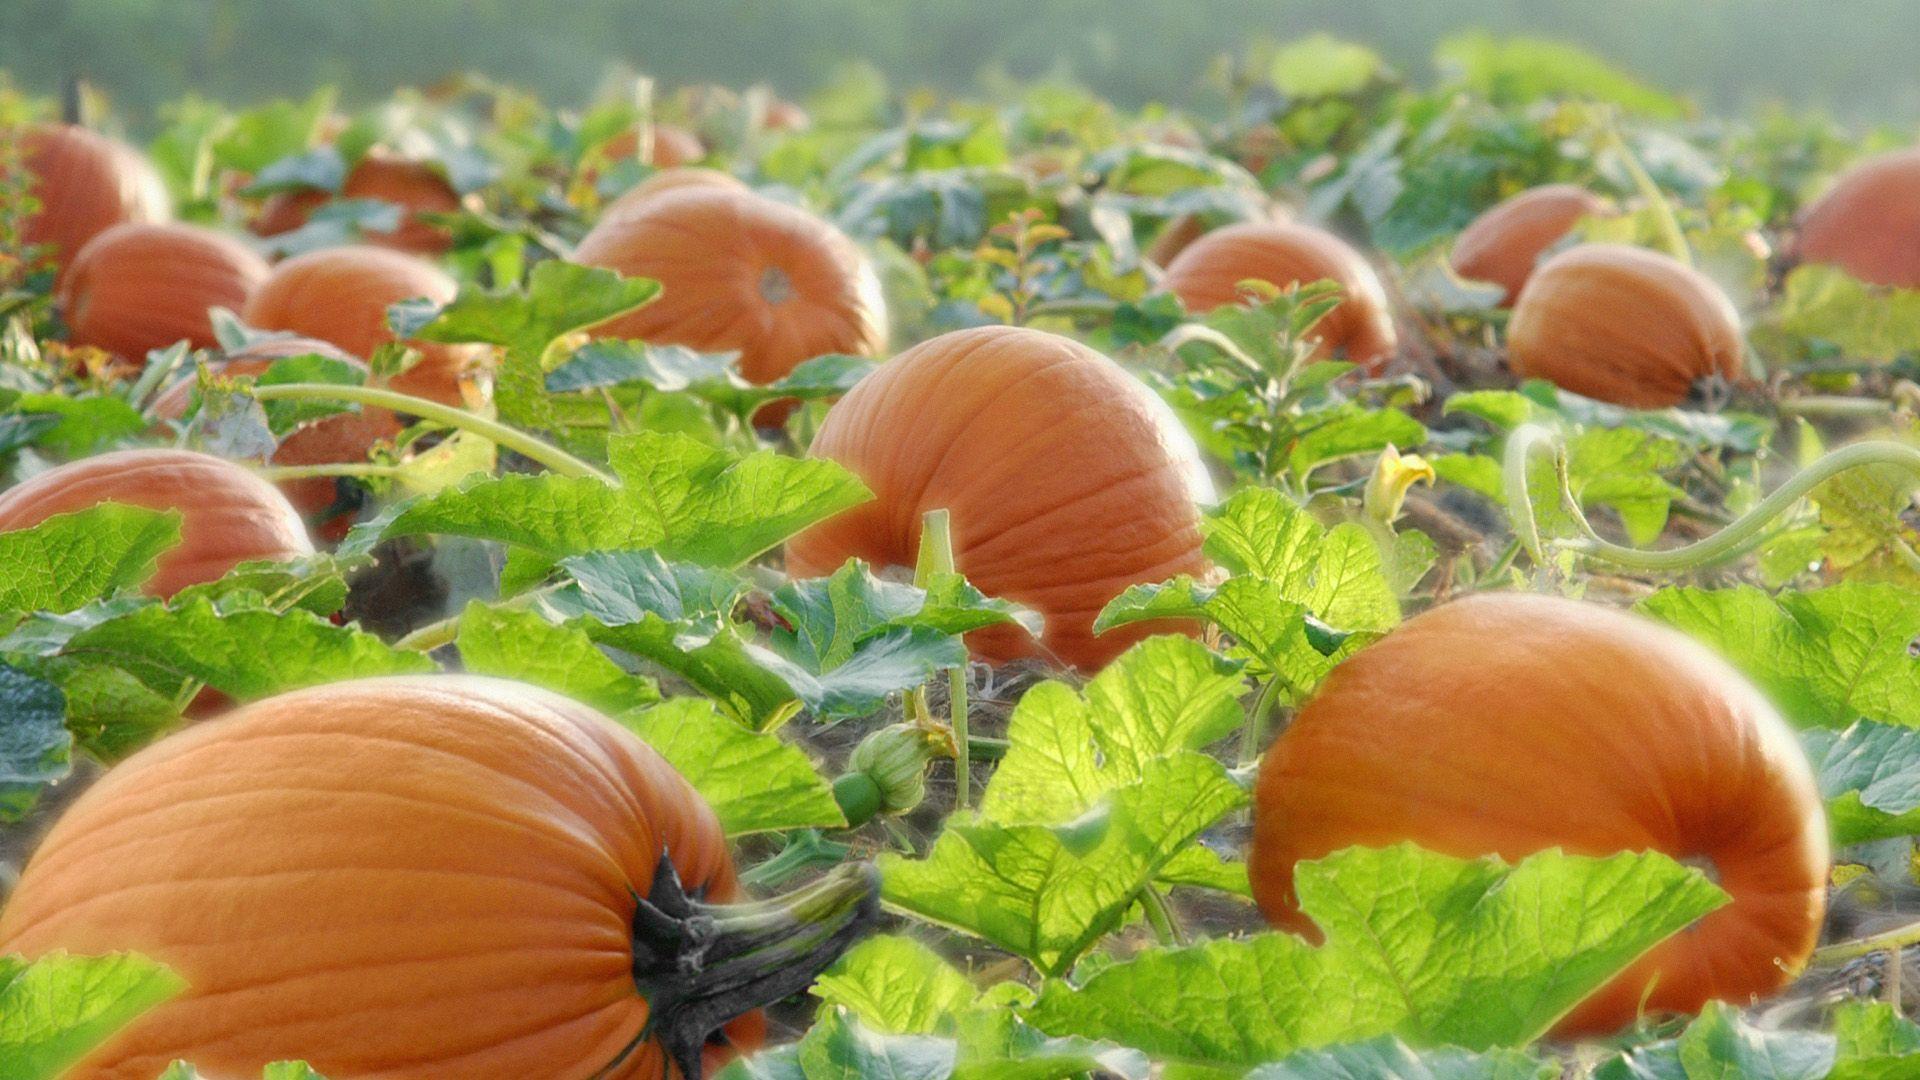 Pumpkin Wallpaper HD